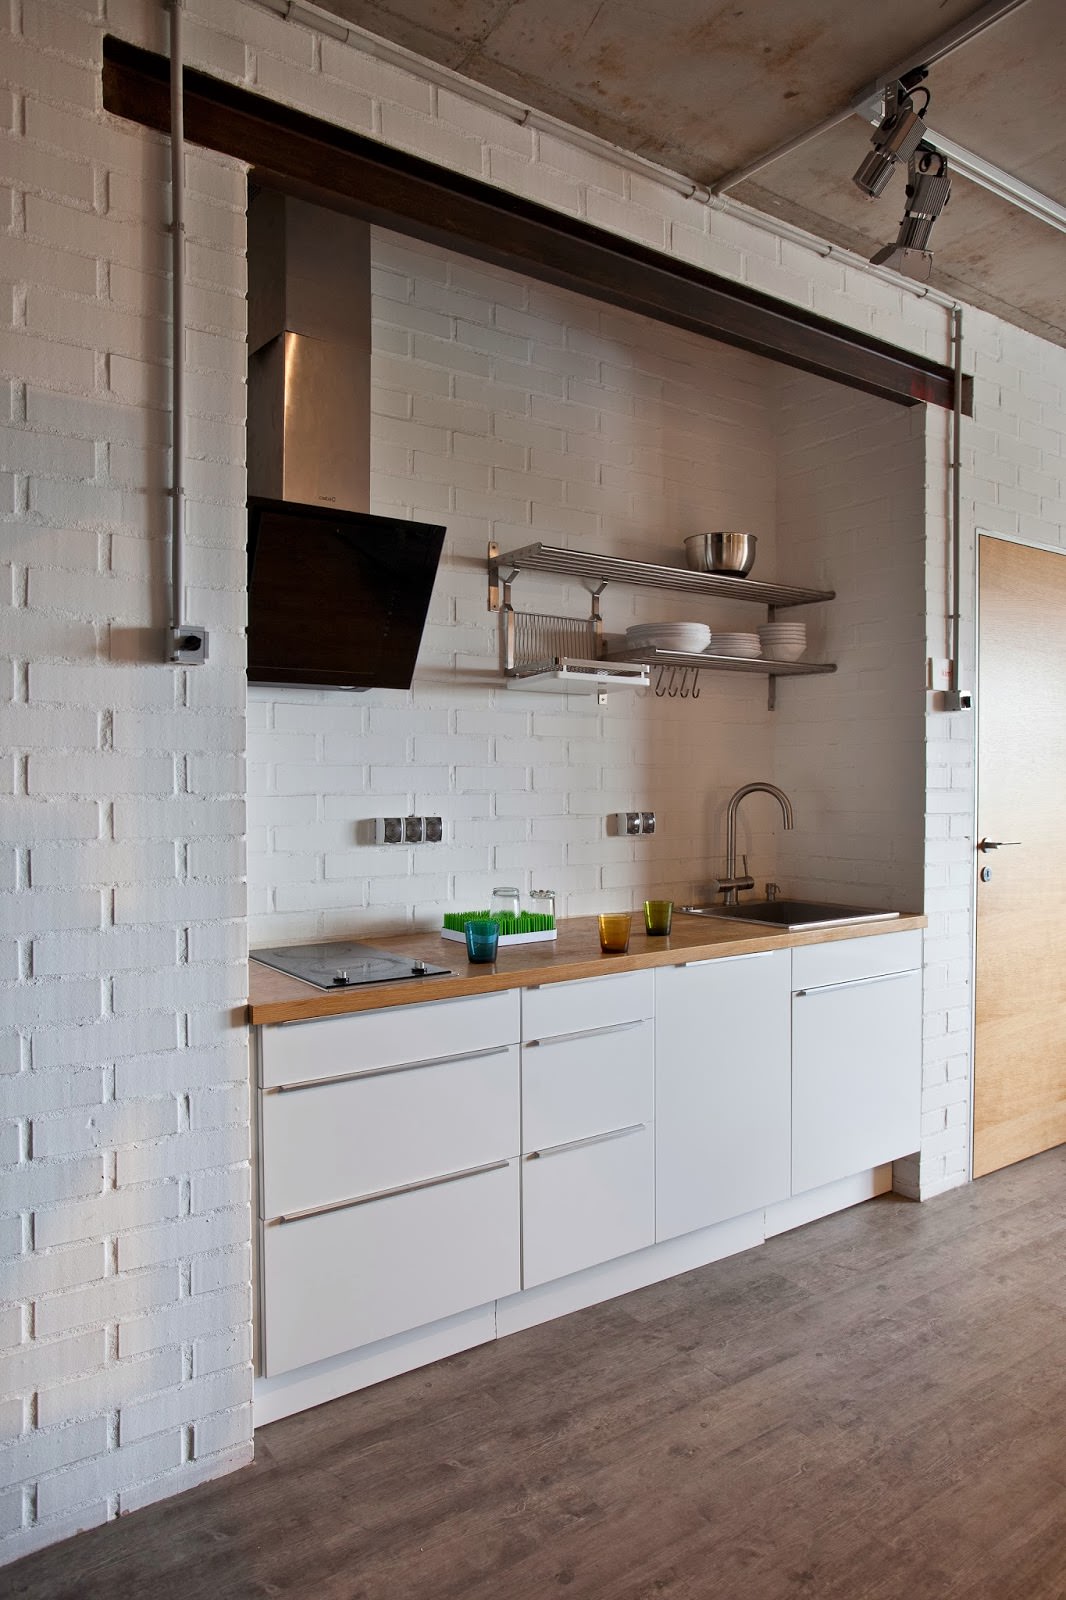 ห้องครัวพร้อมผนังอิฐสีขาวในการตกแต่งภายในของอพาร์ทเมนต์ที่สร้างสรรค์